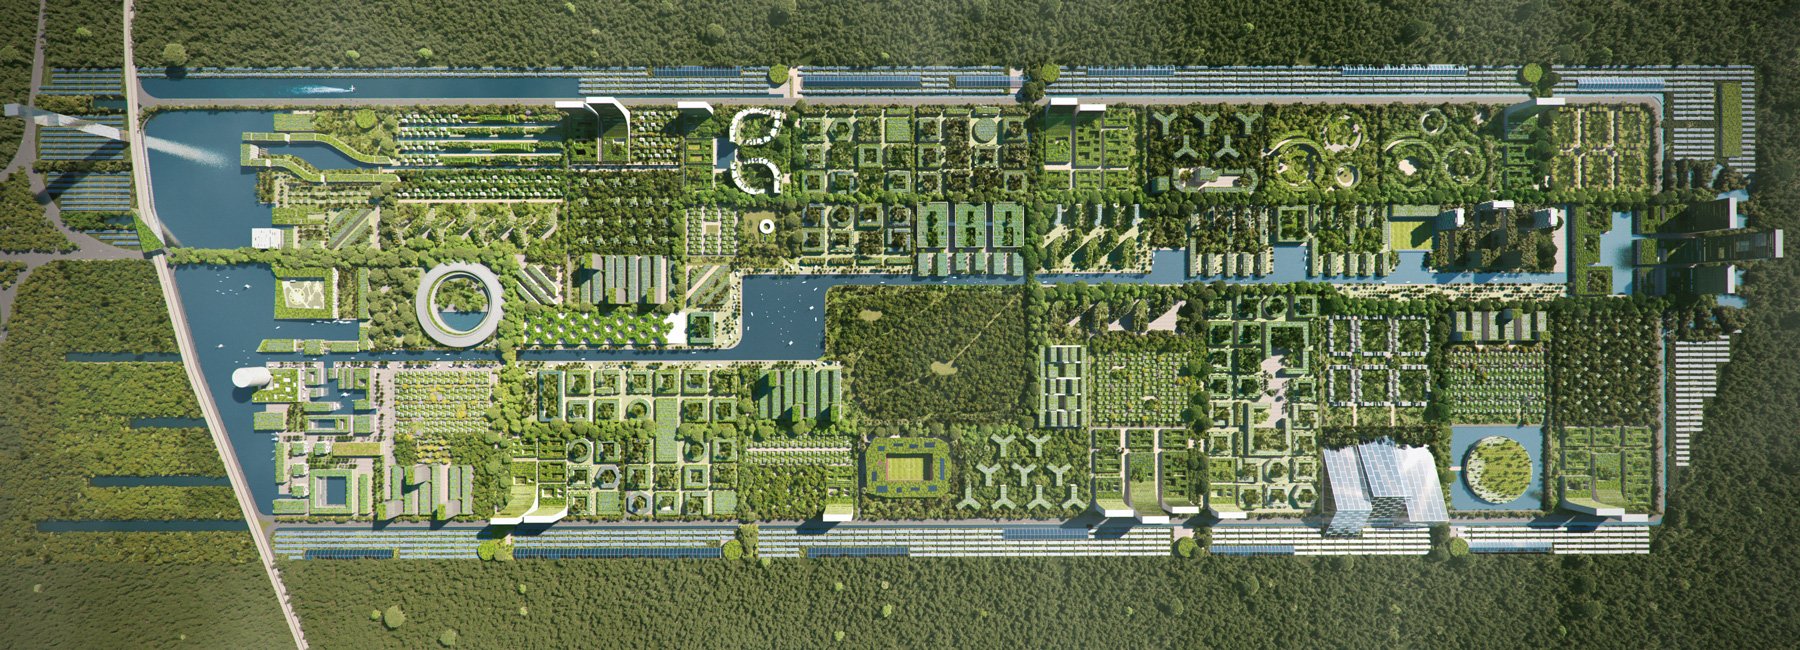 La propuesta de ciudad inteligente basada en el mundo maya